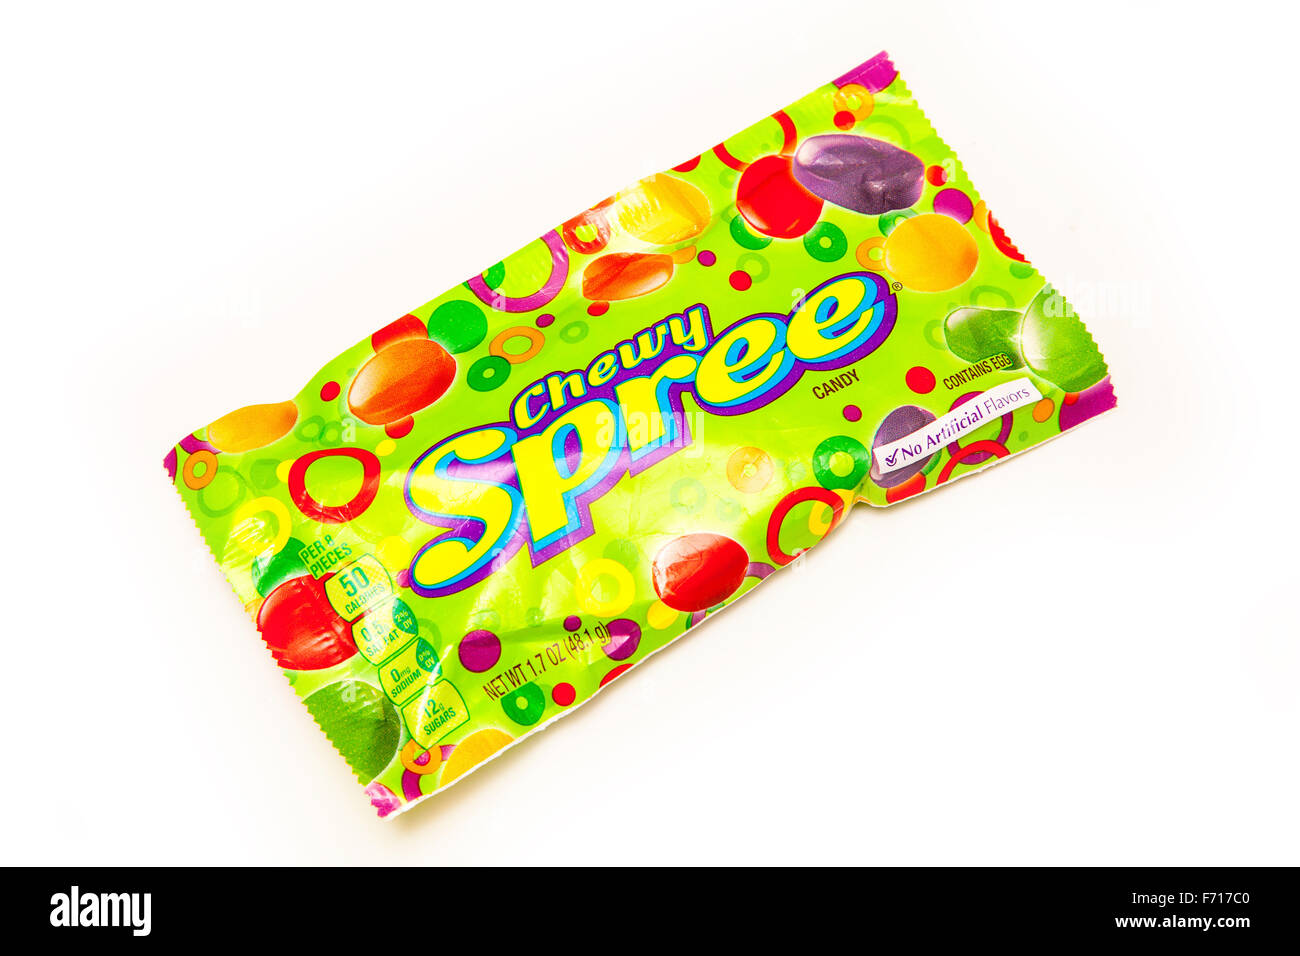 Paket von amerikanischen Chewy Spree Candy isoliert auf einem weißen Studio-Hintergrund. Stockfoto